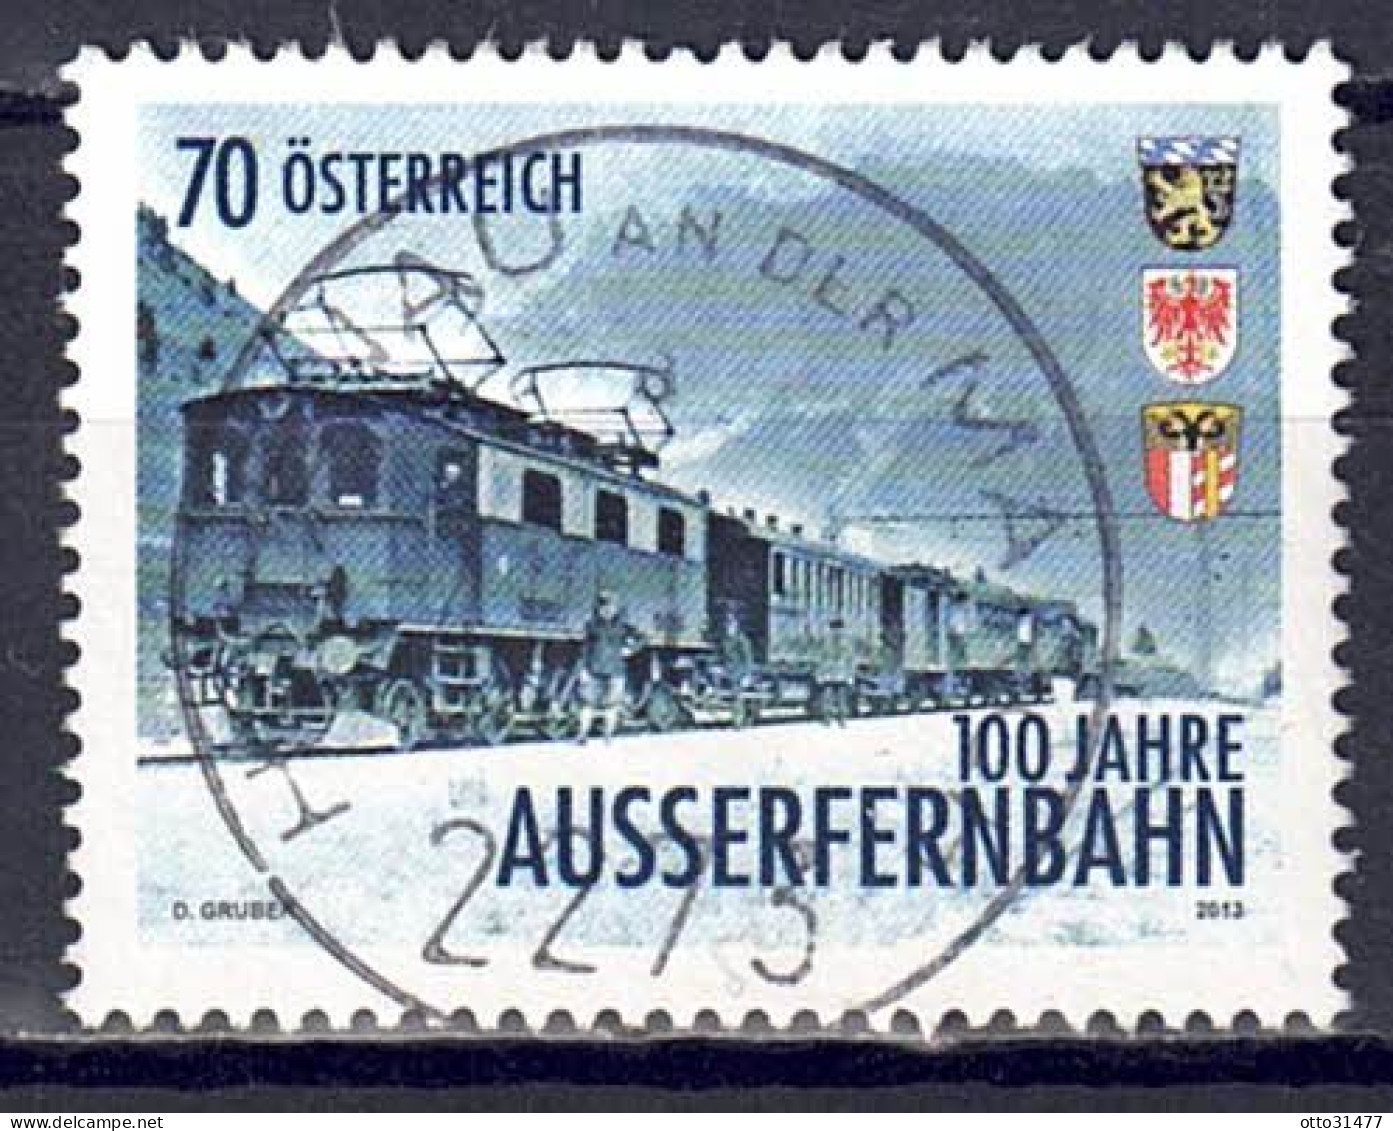 Österreich 2013 - Außerfernbahn, MiNr. 3086, Gestempelt / Used - Gebraucht